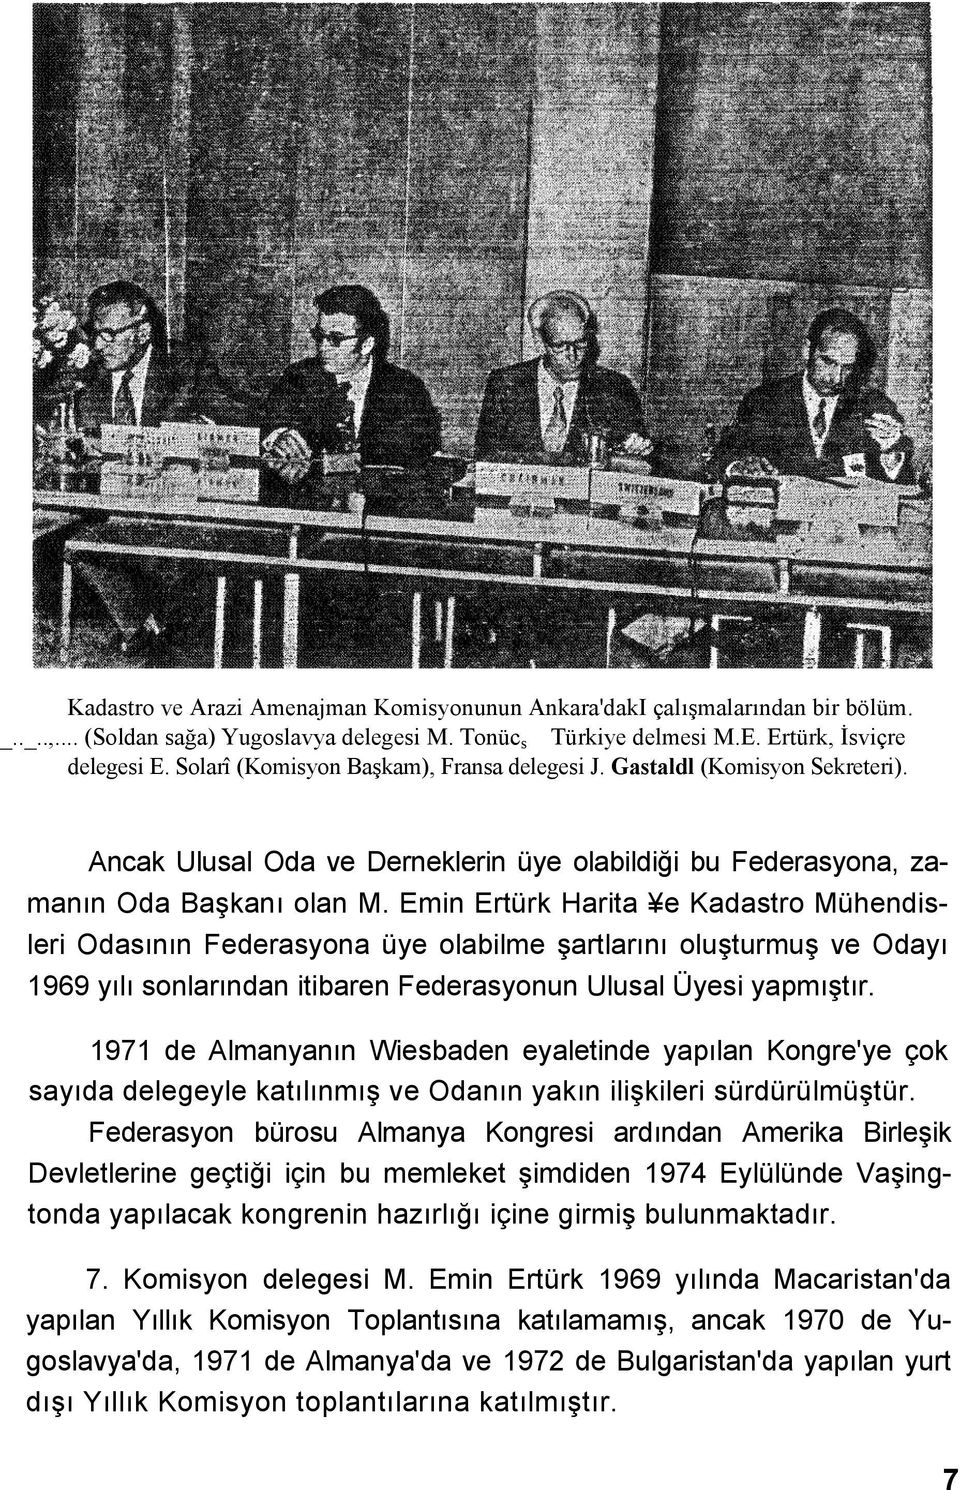 Emin Ertürk Harita e Kadastro Mühendisleri Odasının Federasyona üye olabilme şartlarını oluşturmuş ve Odayı 1969 yılı sonlarından itibaren Federasyonun Ulusal Üyesi yapmıştır.